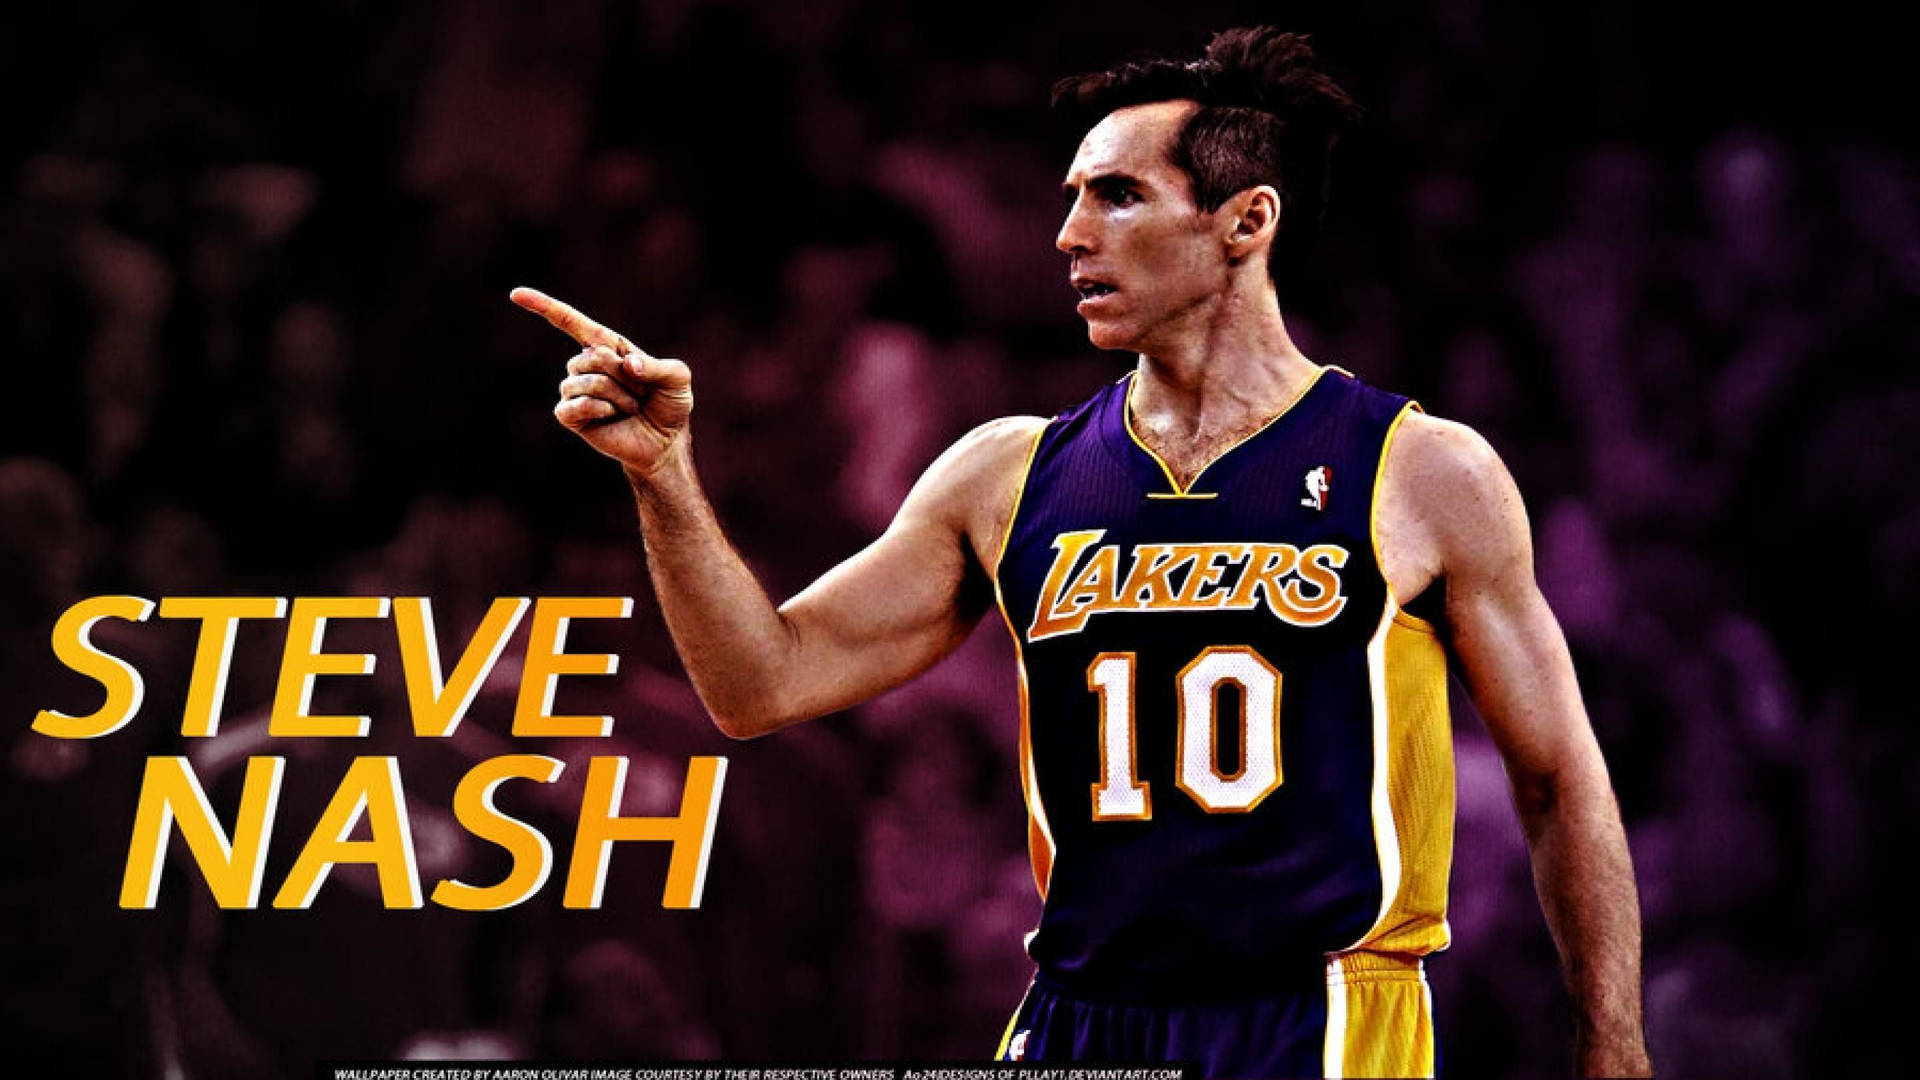 Stevenash Señalando En Los Lakers. Fondo de pantalla